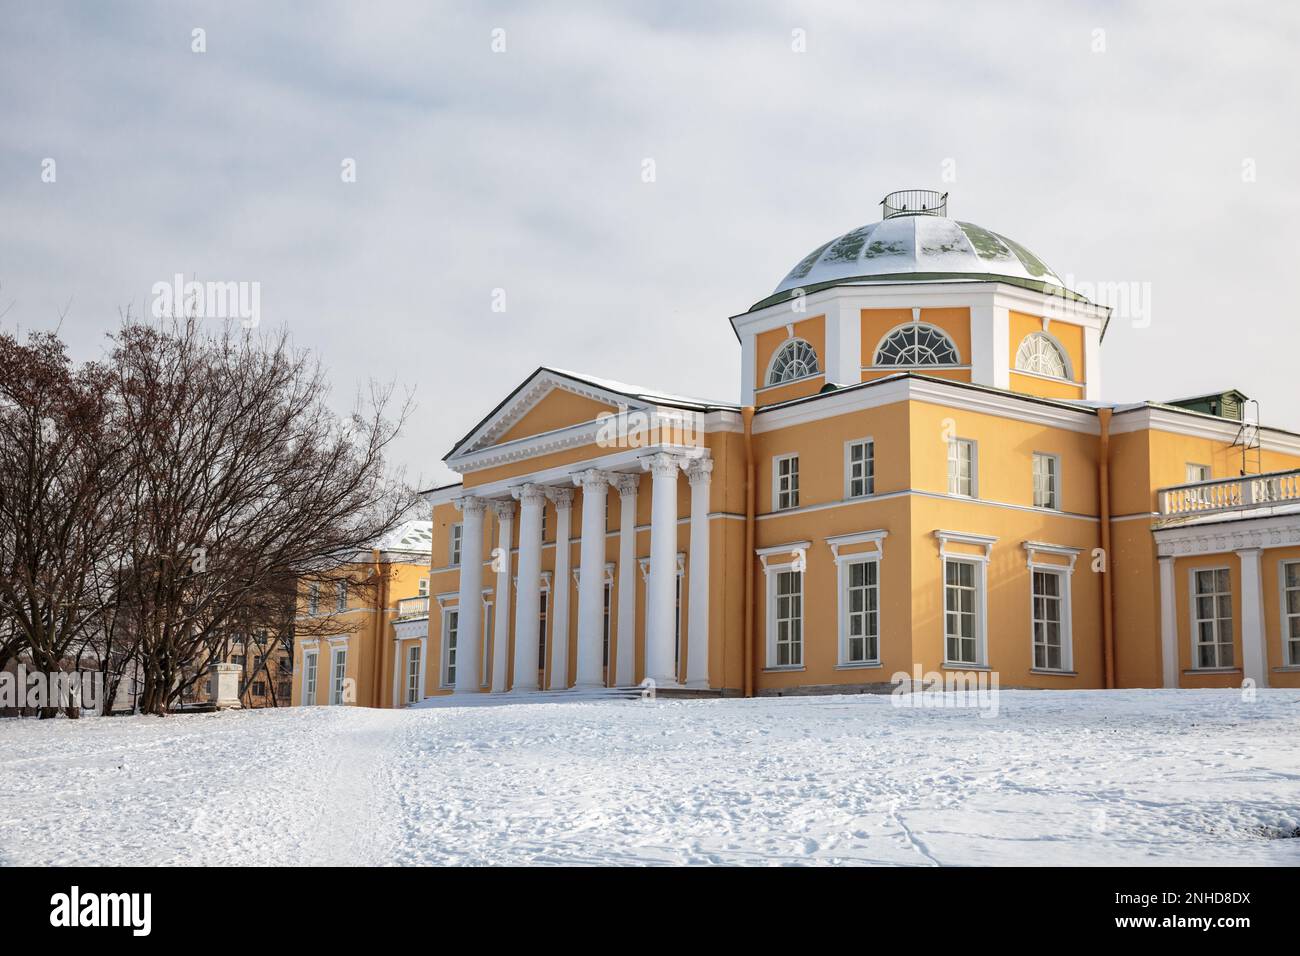 Ancienne propriété du parc Aleksandrino (Chernysheva datcha), construite en 1762. Maintenant une école d'art pour enfants, St. Petersbourg, Russie Banque D'Images